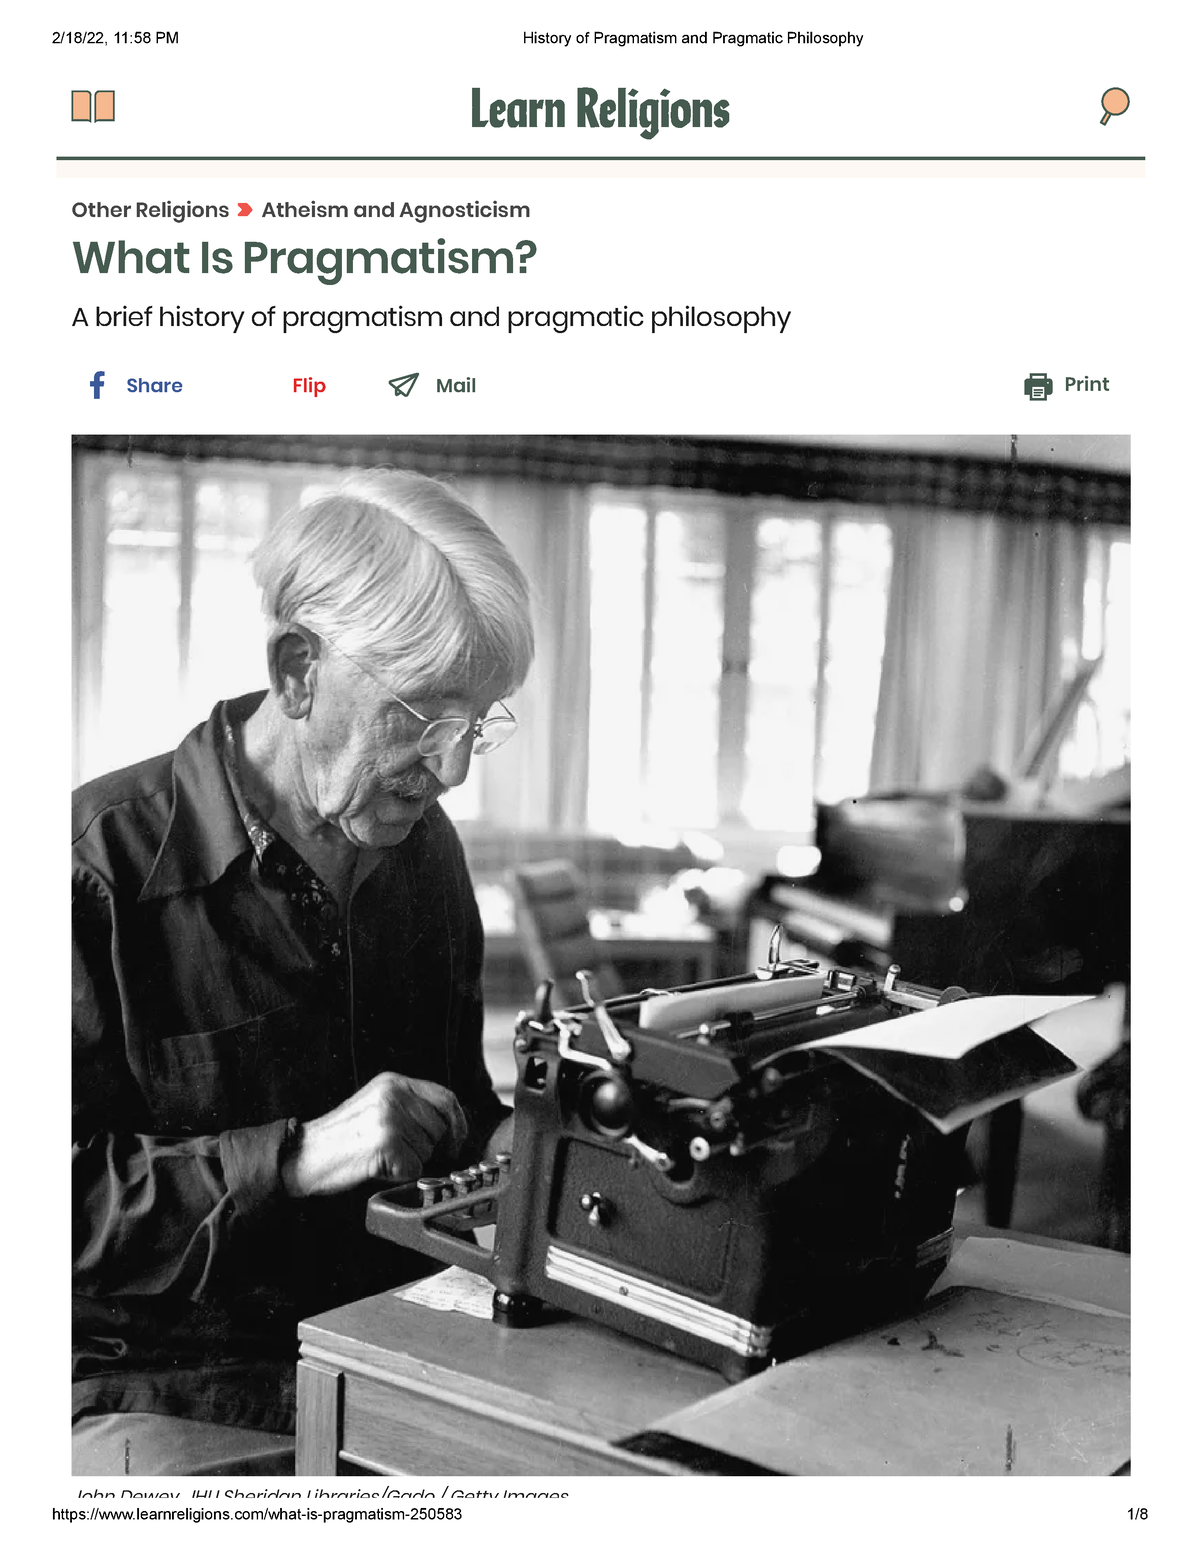 Dějiny pragmatismu a pragmatické filozofie